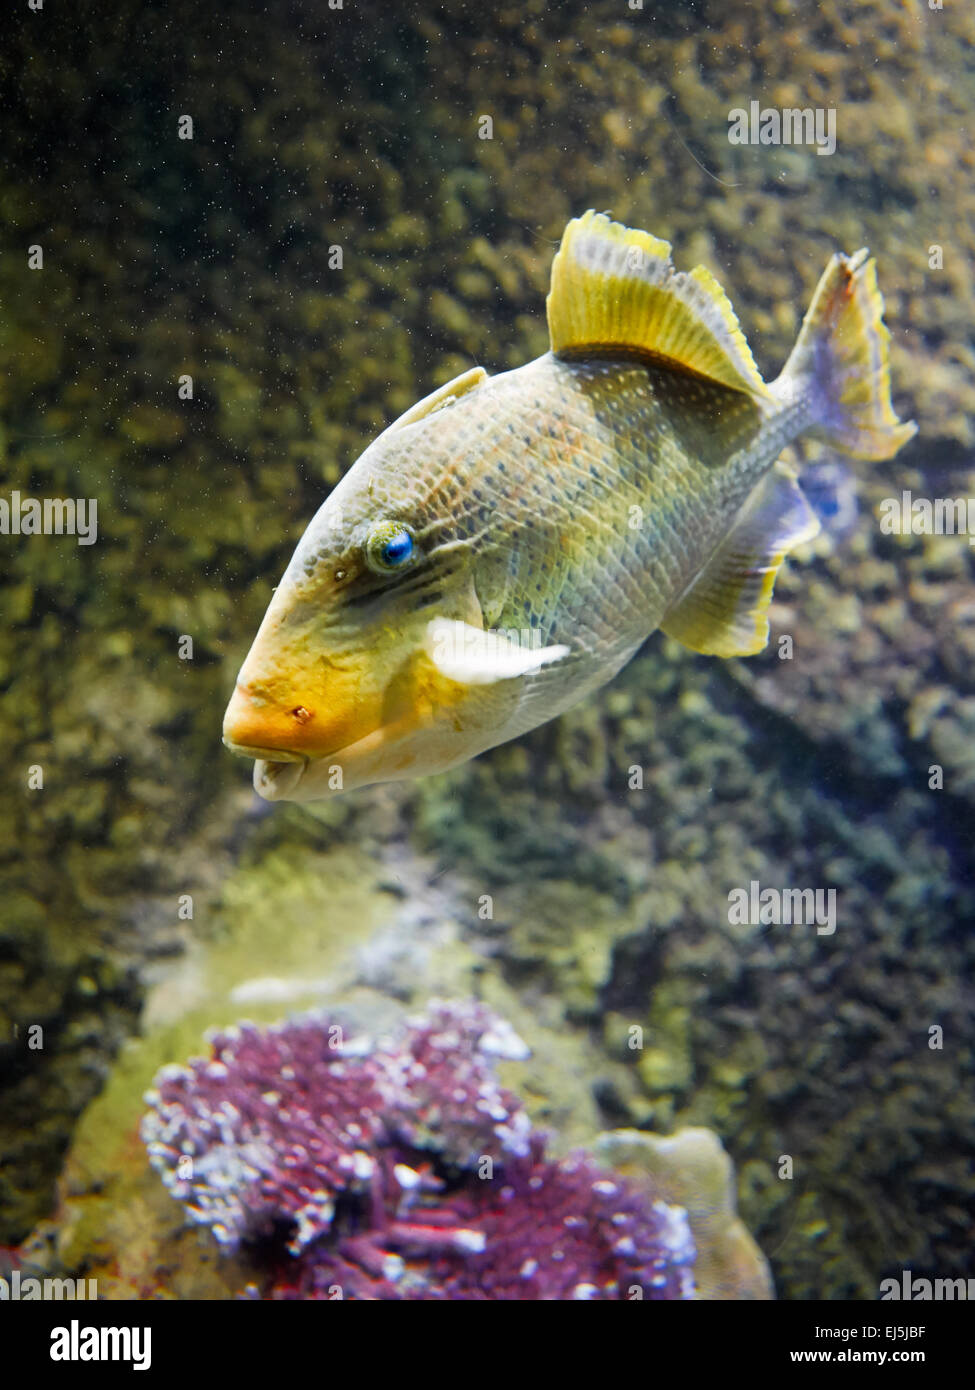 The yellowmargin triggerfish. Scientific name: Pseudobalistes flavimarginatus. Vinpearl Land Aquarium, Phu Quoc, Vietnam. Stock Photo